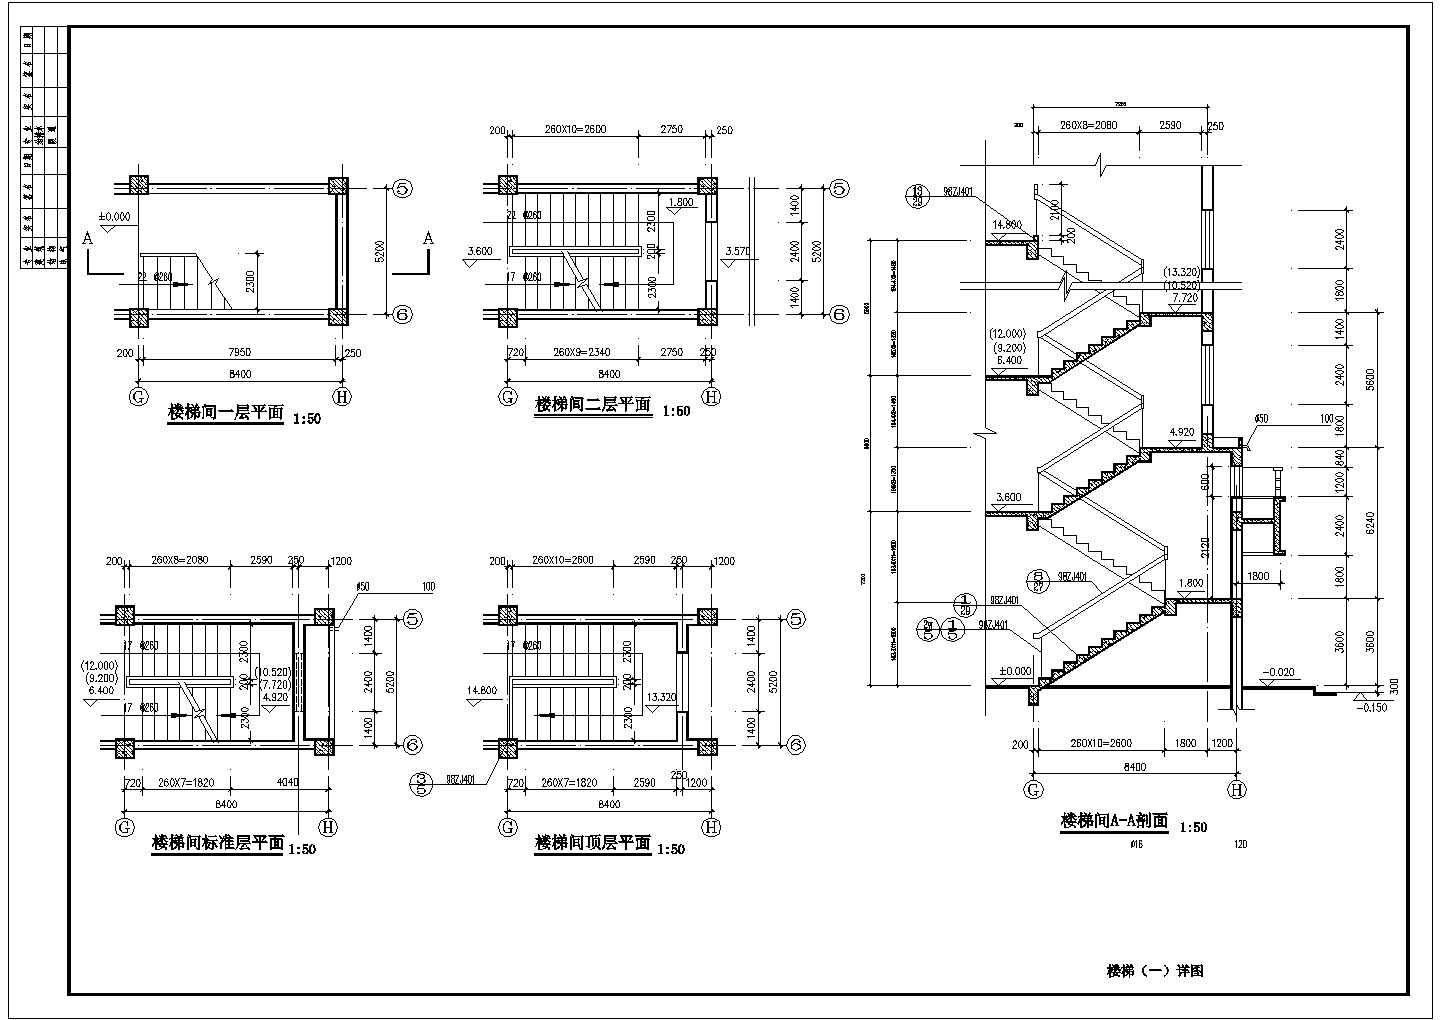 重庆市某安置小区3200平米6层砖混结构住宅楼全套建筑设计CAD图纸